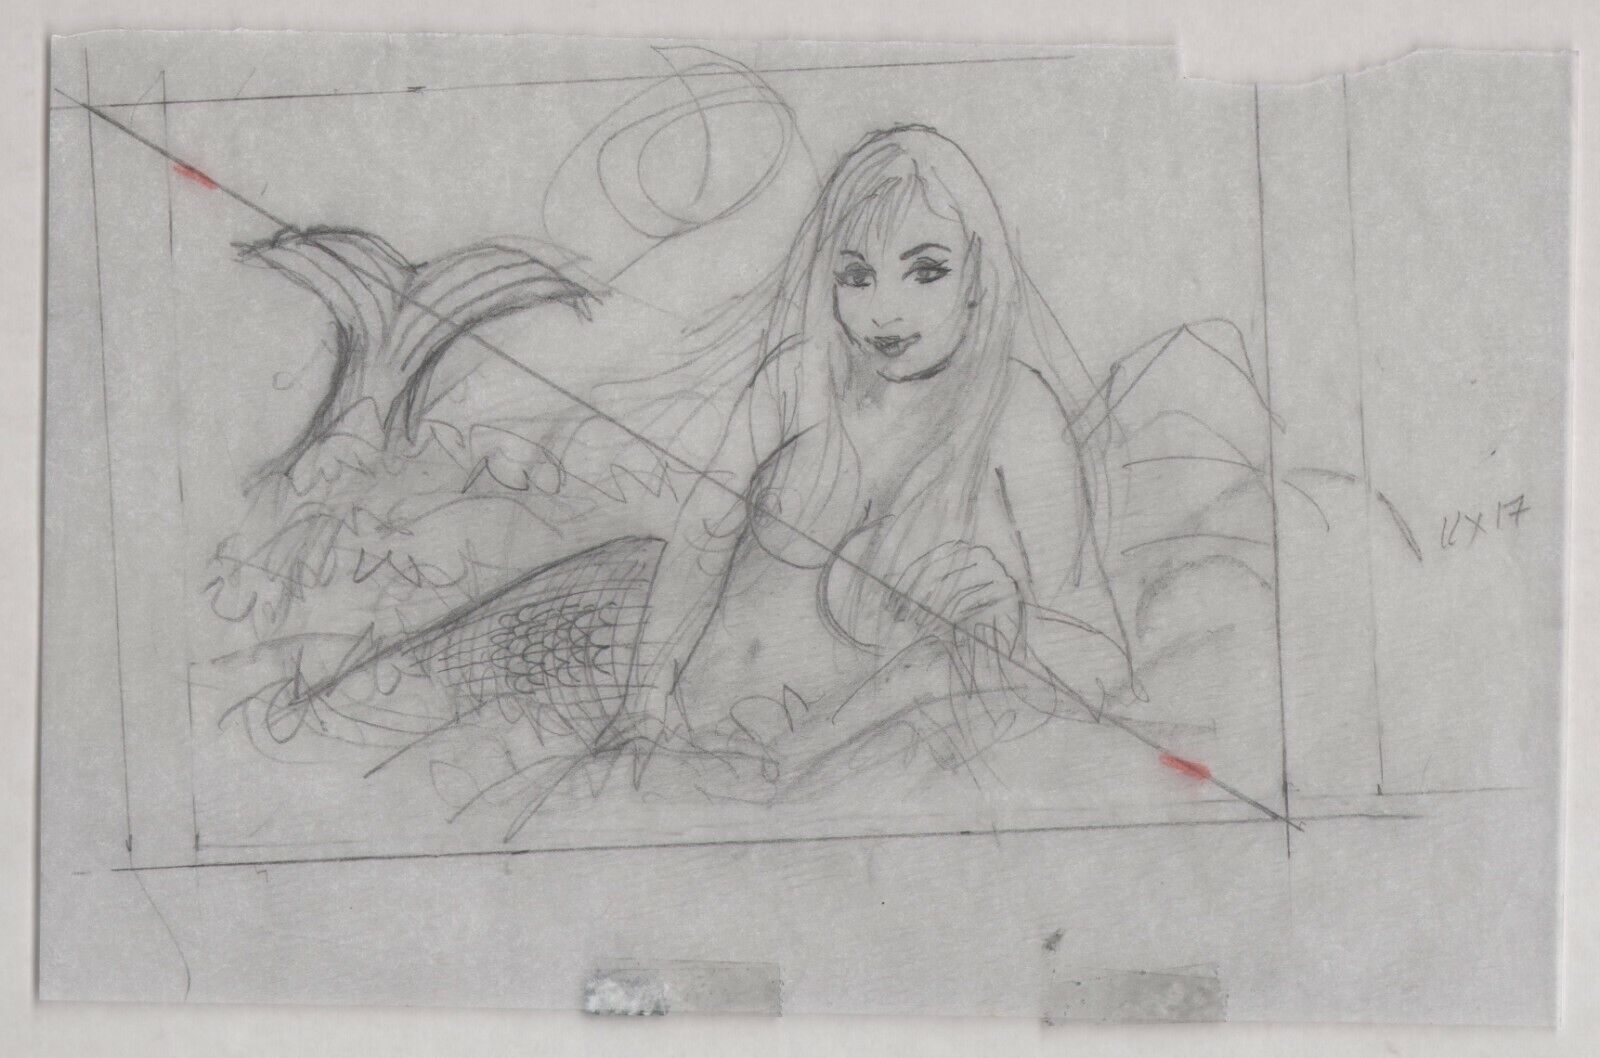 Playboy Artist Doug Sneyd Original Art Sketch Mermaid Pencil Preliminary Prelim